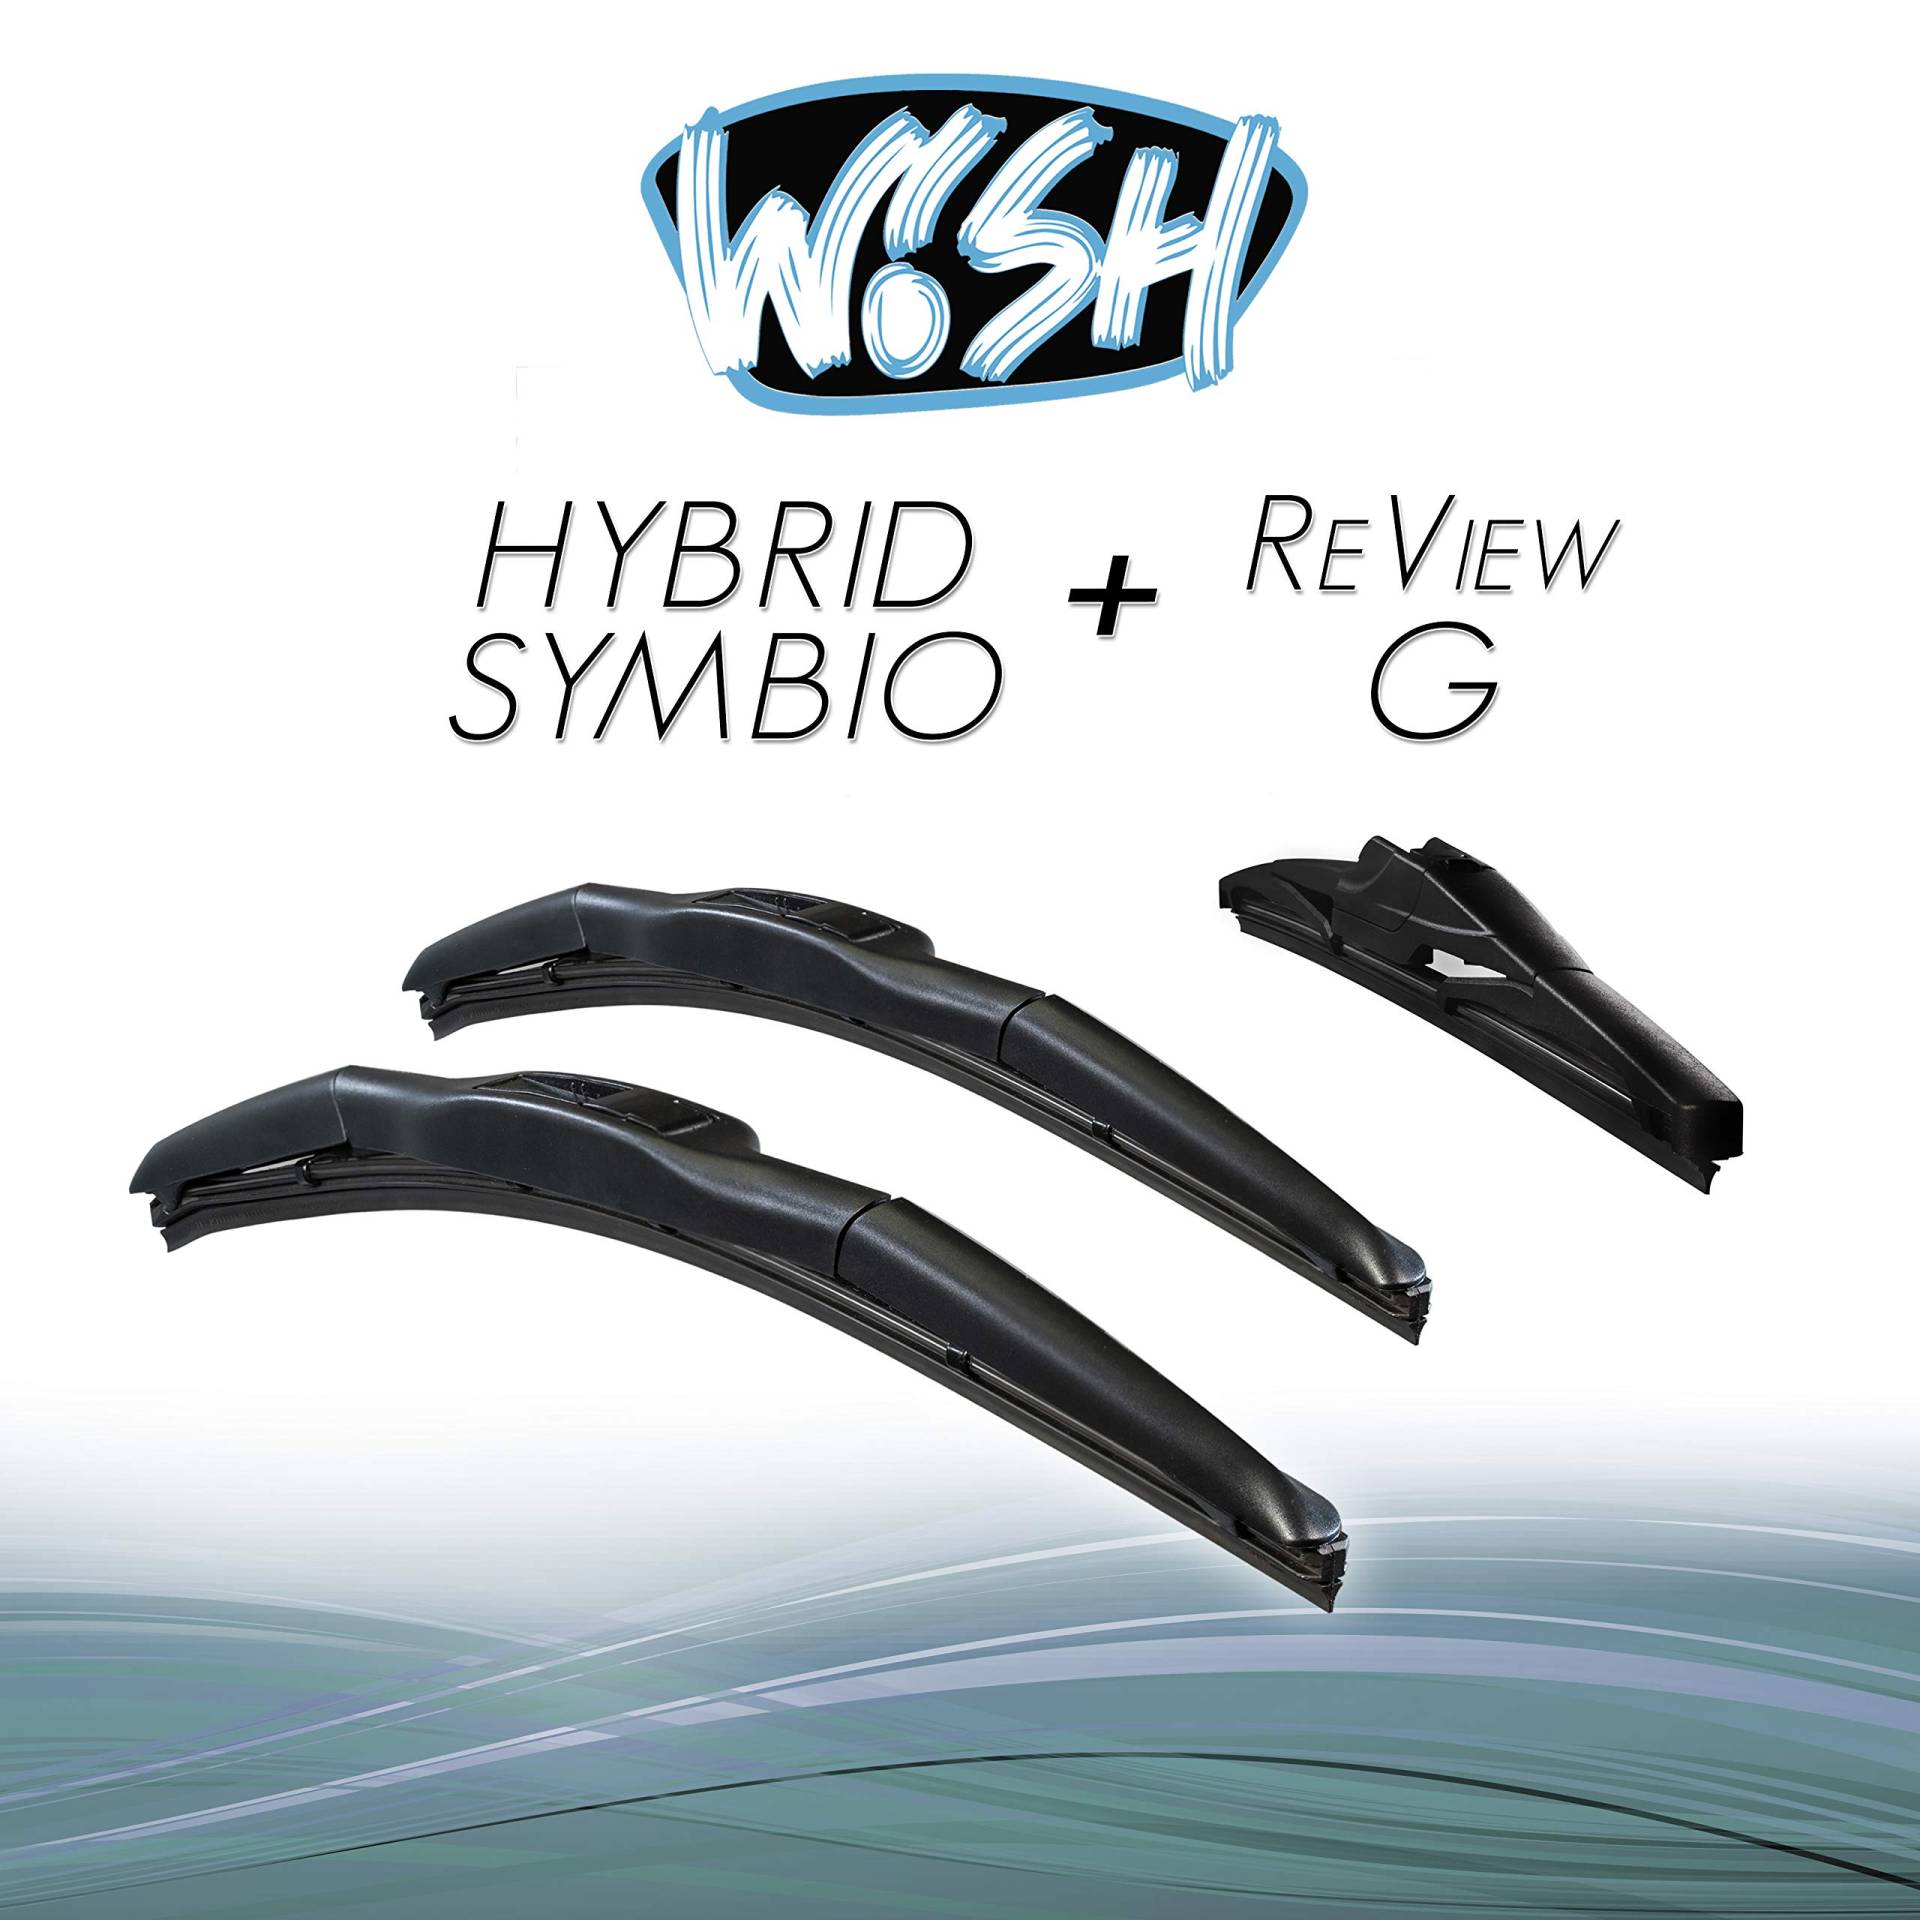 Wish® Hybrid Symbio Satz Front + Heck Scheibenwischer Länge: 24" 600mm / 14" 350mm / 14" 350mm Wischblätter Vorne und Hinten Hybrid-Scheibenwischer + Review G HS24.14.14RG von Wish